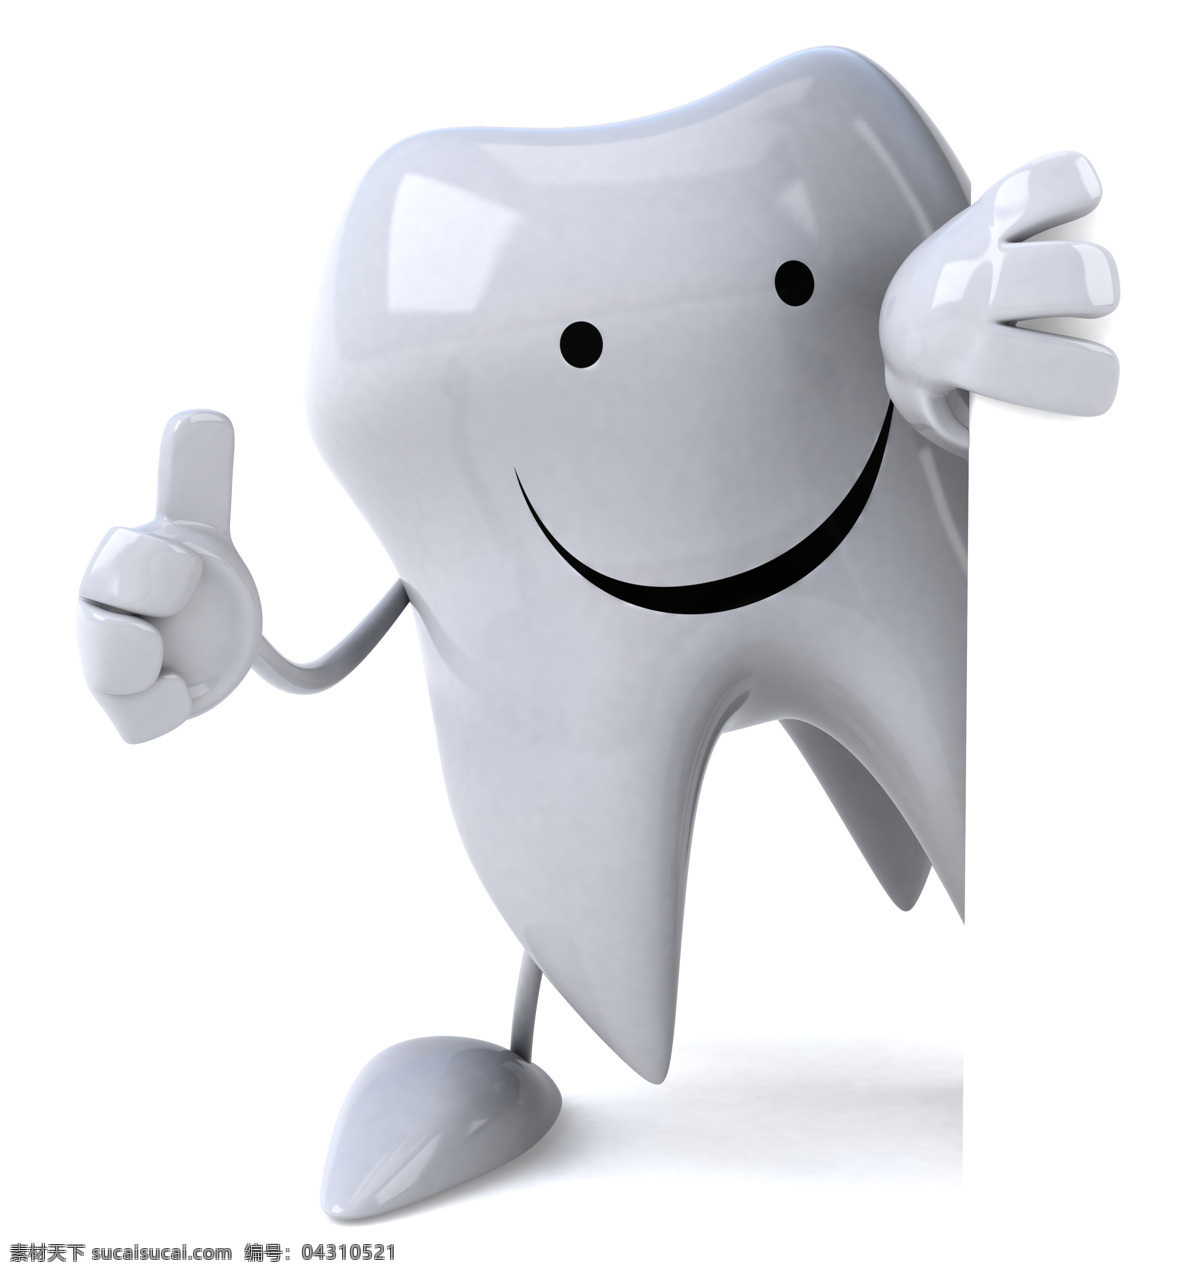 3d设计 卡通牙齿 口腔 牙齿 牙齿矫正 牙齿模型 牙医 牙齿小人 护齿 牙套 口部 贝齿保护牙齿 医疗护理 3d模型素材 其他3d模型